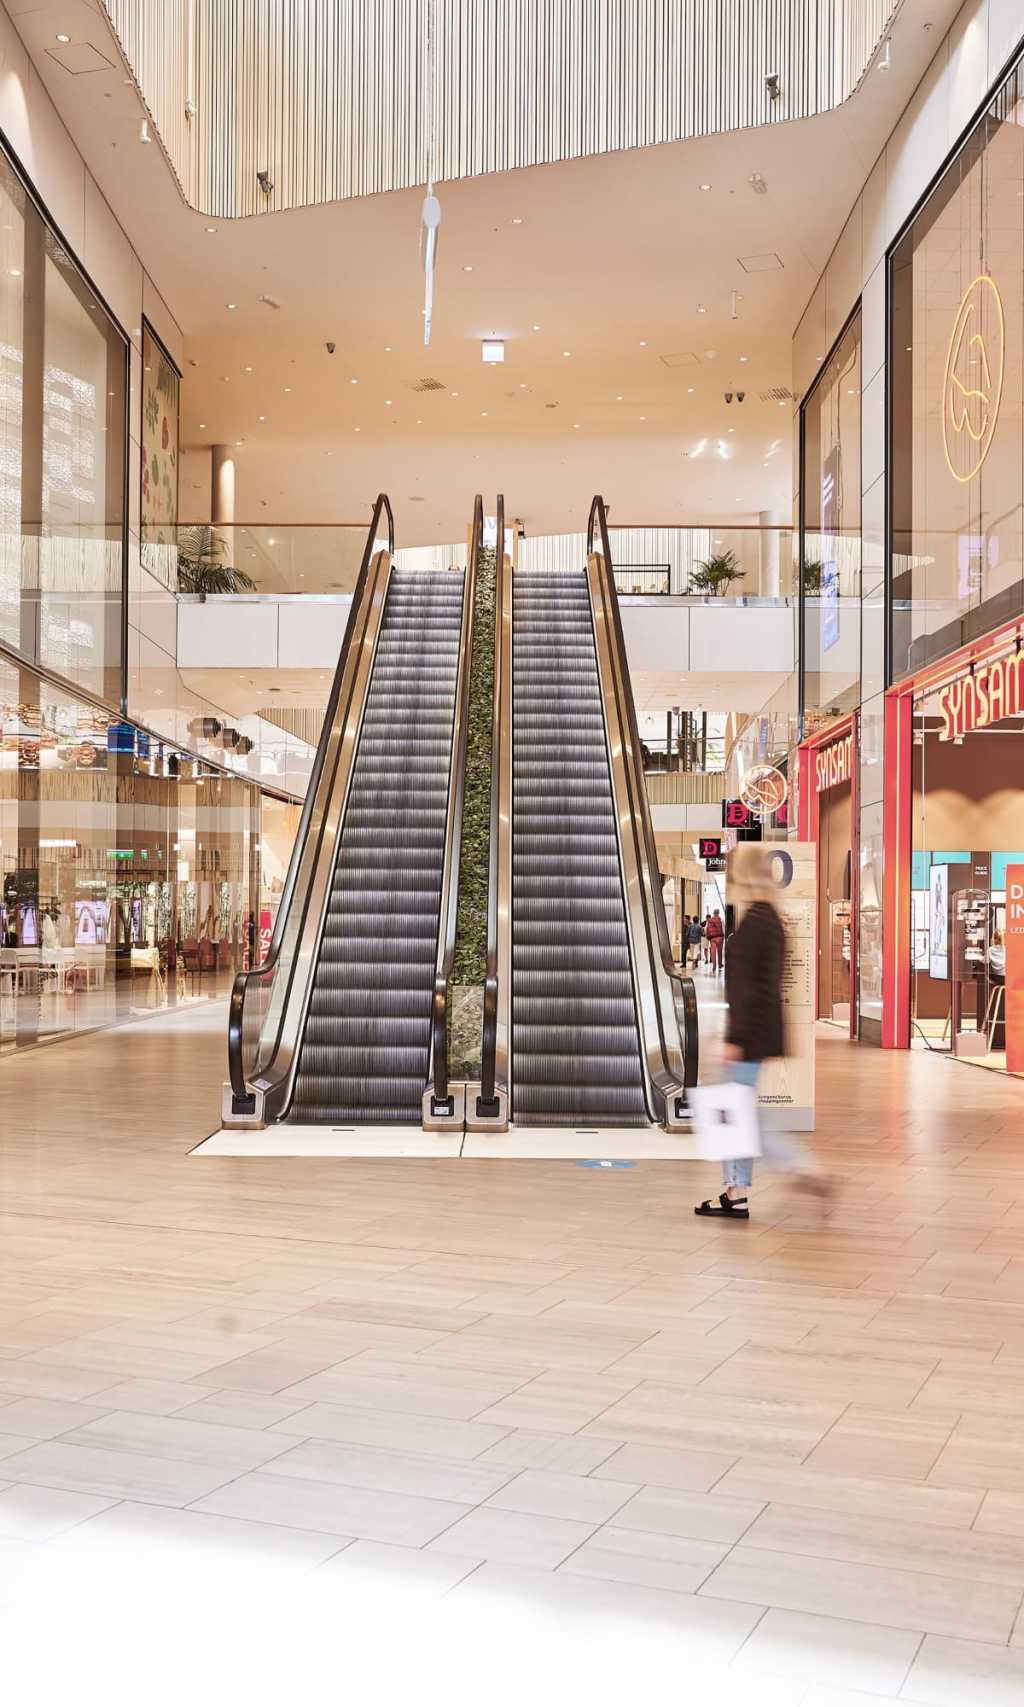 Escalators in shopping centre 